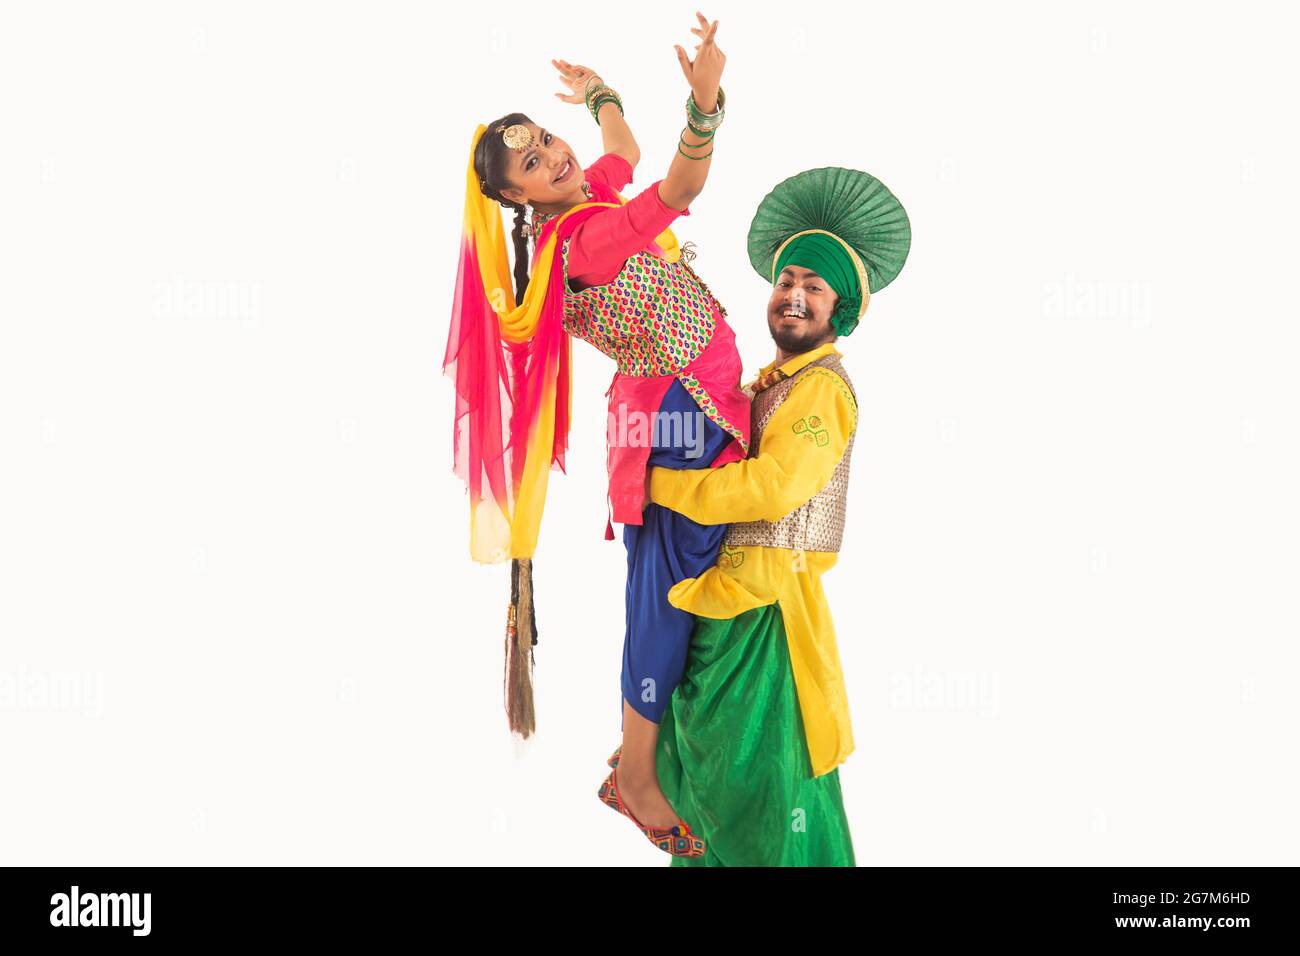 Un danseur de Bhangra levant un danseur de Giddha représentant un pas de danse. Banque D'Images